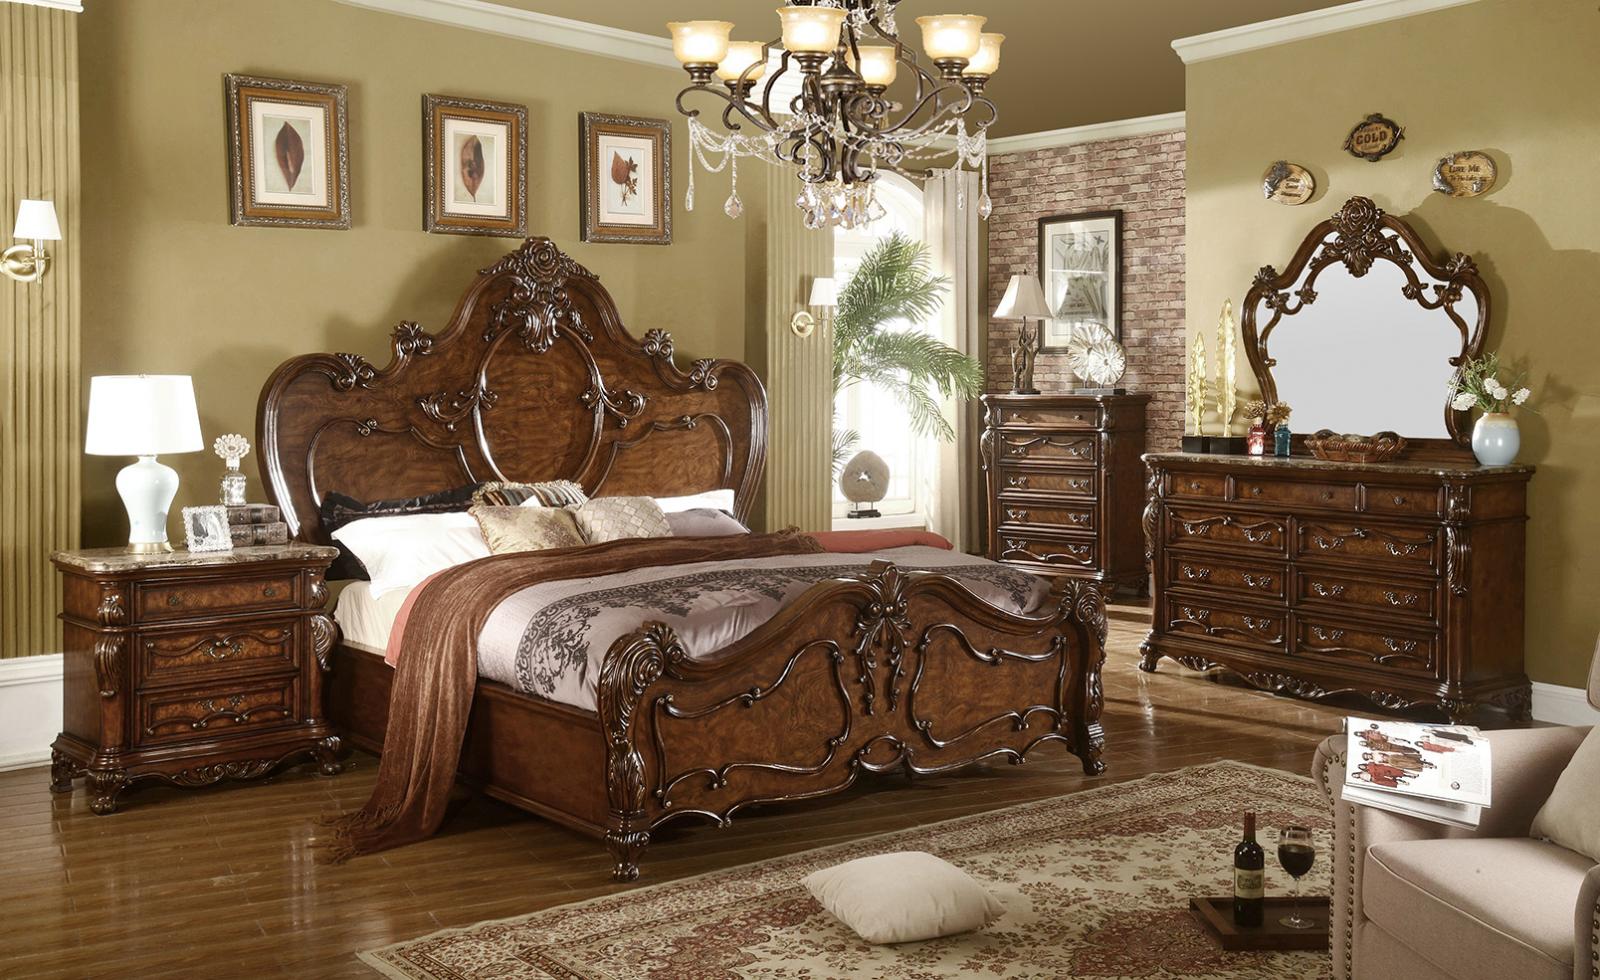 Traditional Cherry Oak Queen Size Bedroom Set 5 Pcs B7189 Mcferran - image 1 of 8